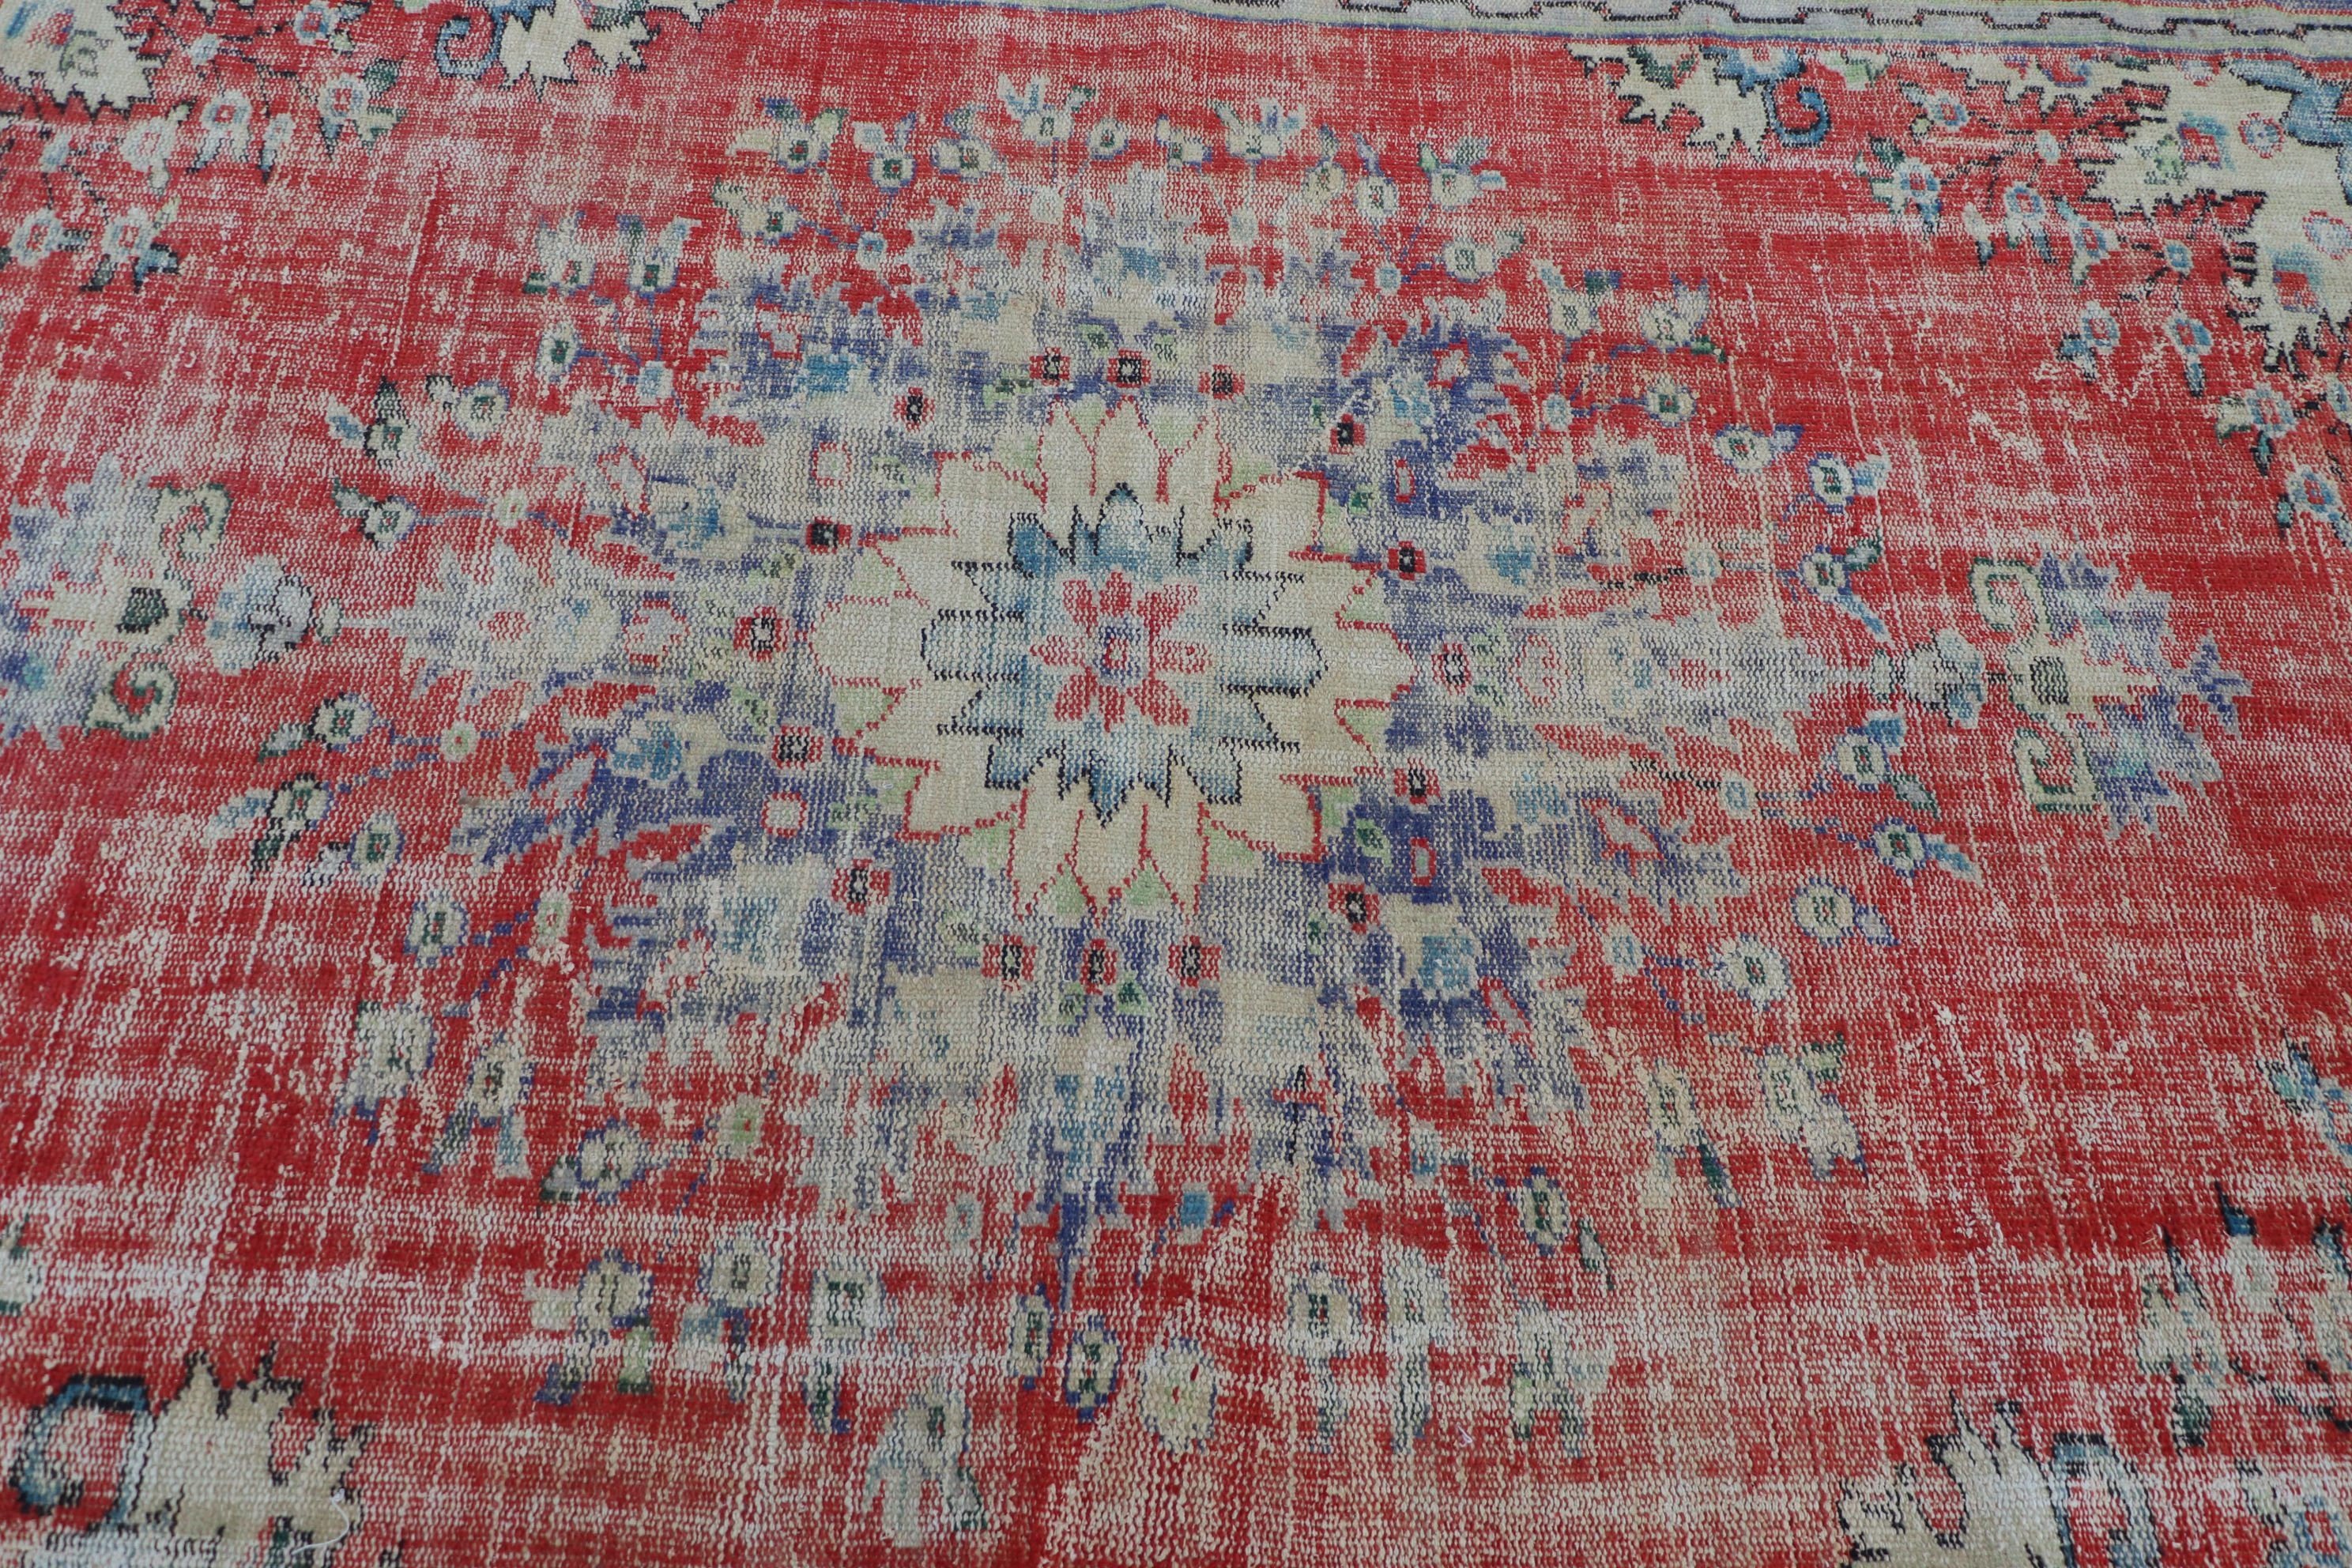 Vintage Rug, Red Antique Rugs, Turkish Rug, Oushak Rug, 5.7x9 ft Large Rug, Dining Room Rugs, Home Decor Rug, Dorm Rugs, Living Room Rug